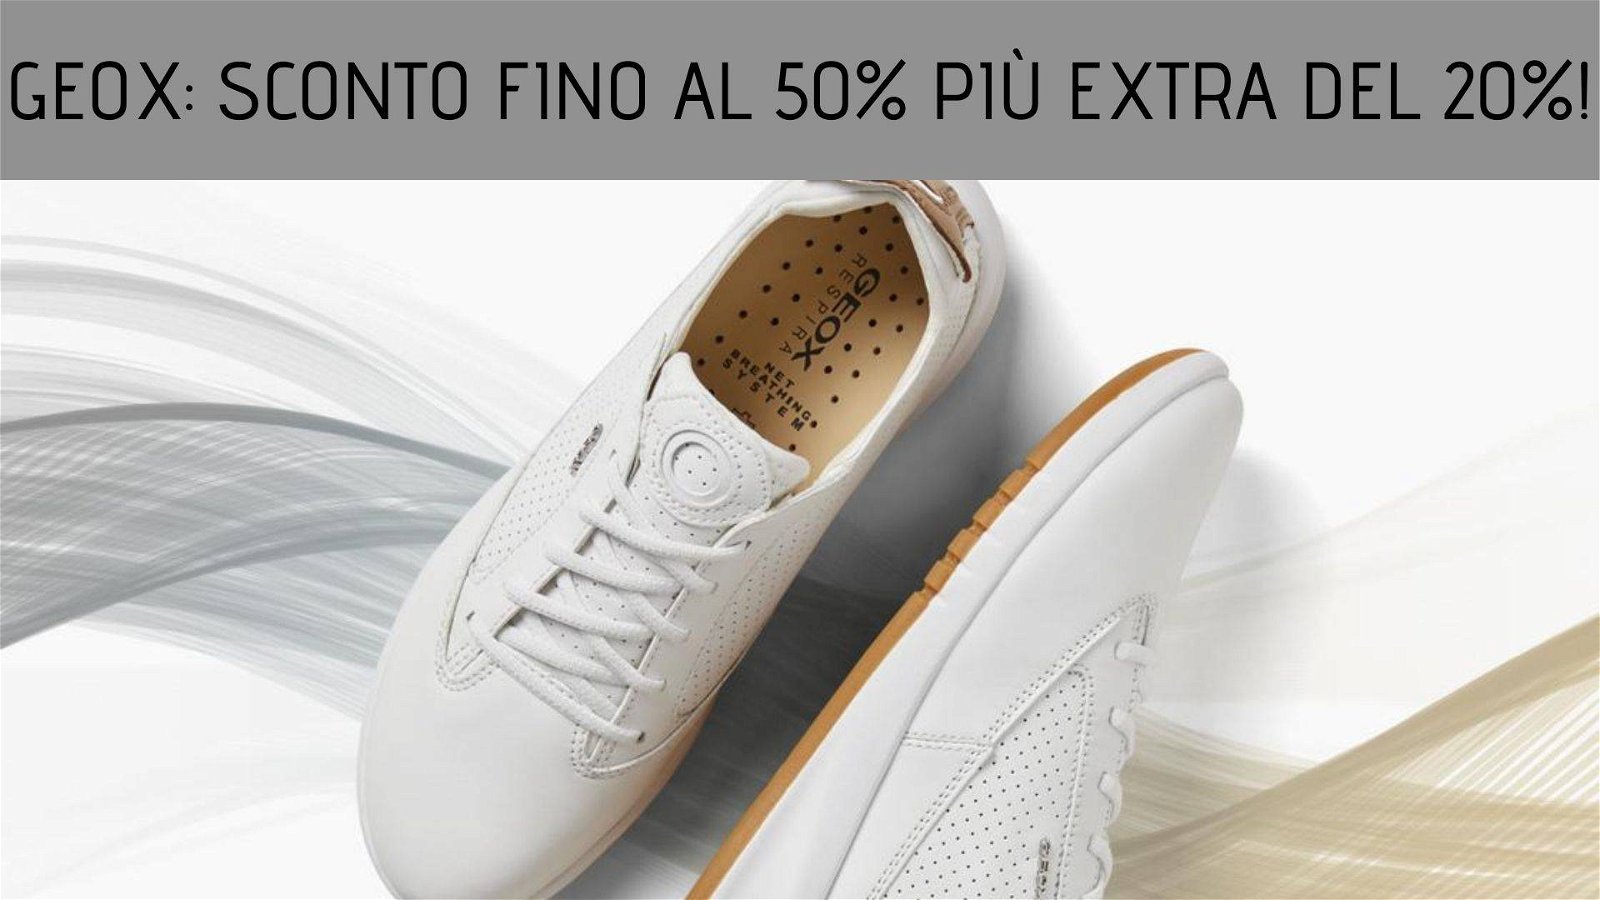 Immagine di Geox: scarpe in saldo al 50% più extra sconto del 20%!